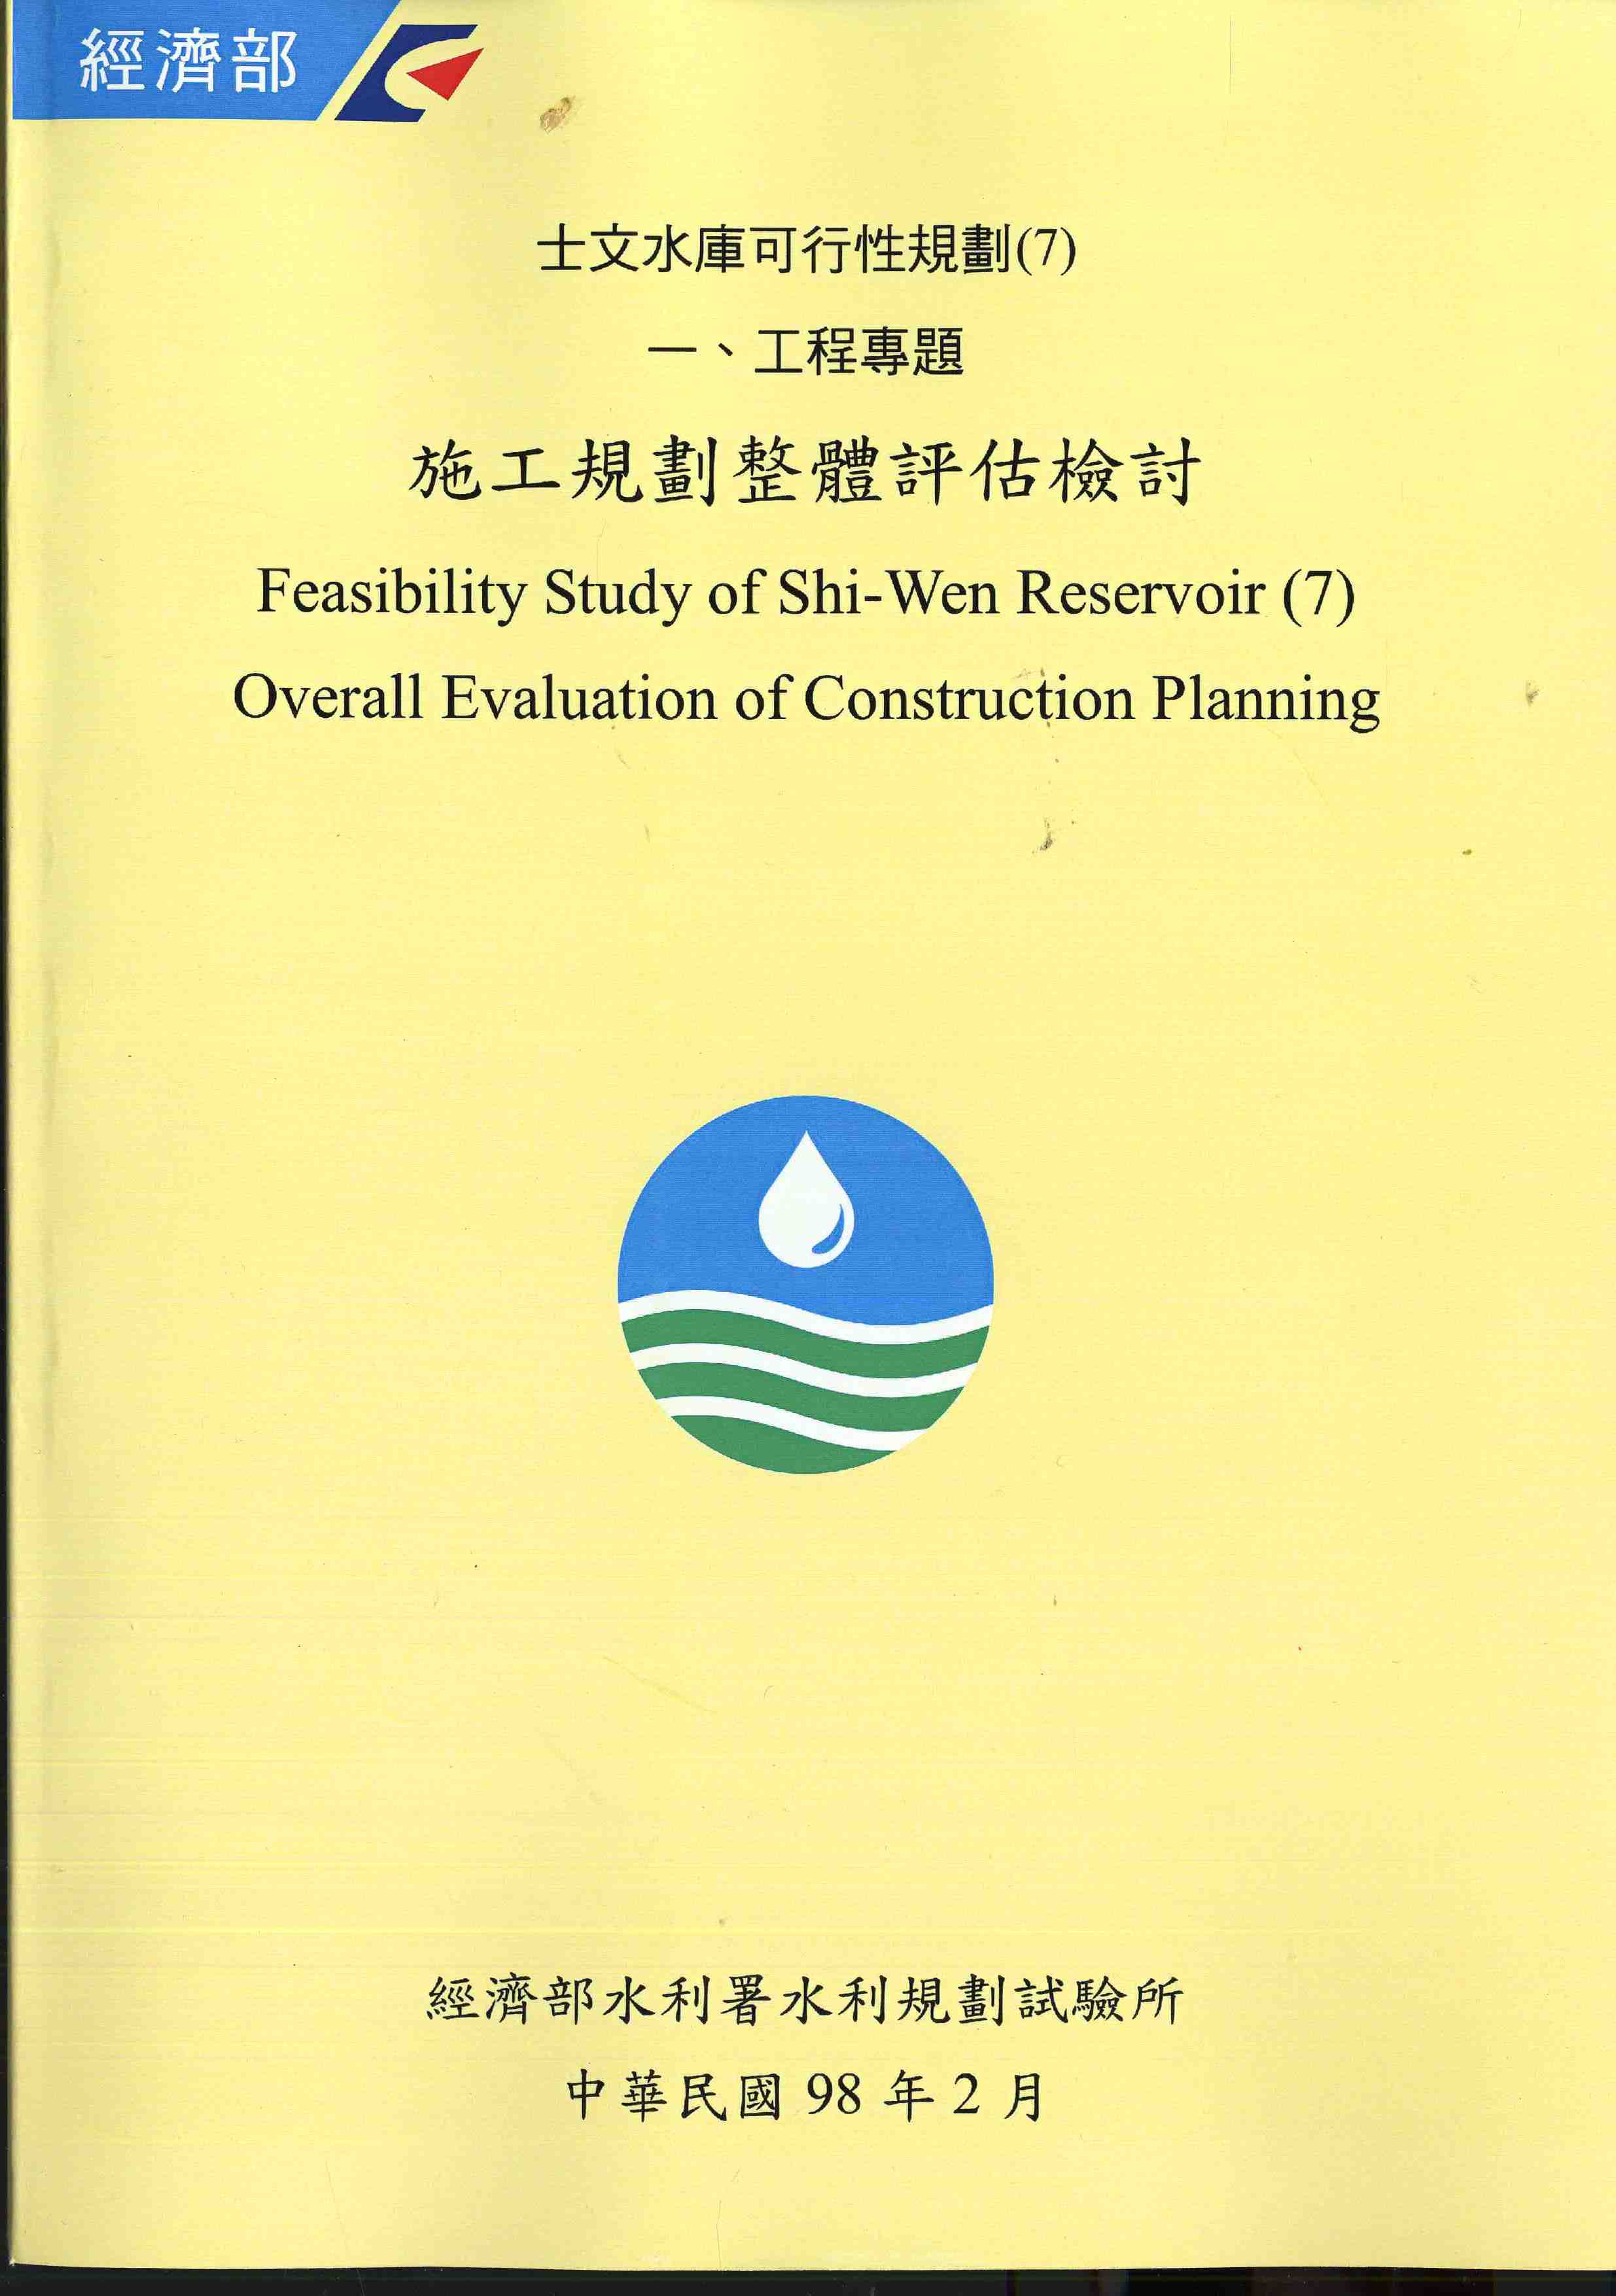 士文水庫可行性規劃(7) 一、工程專題  施工規劃整體評估檢討